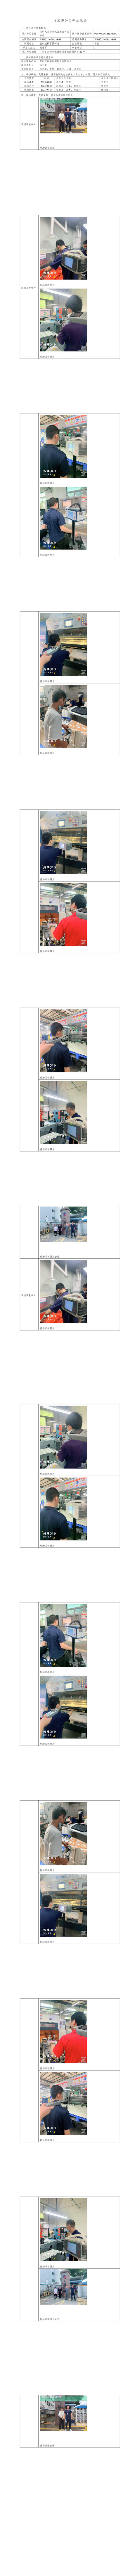 深圳九星印刷包装集团有限公司(图1)